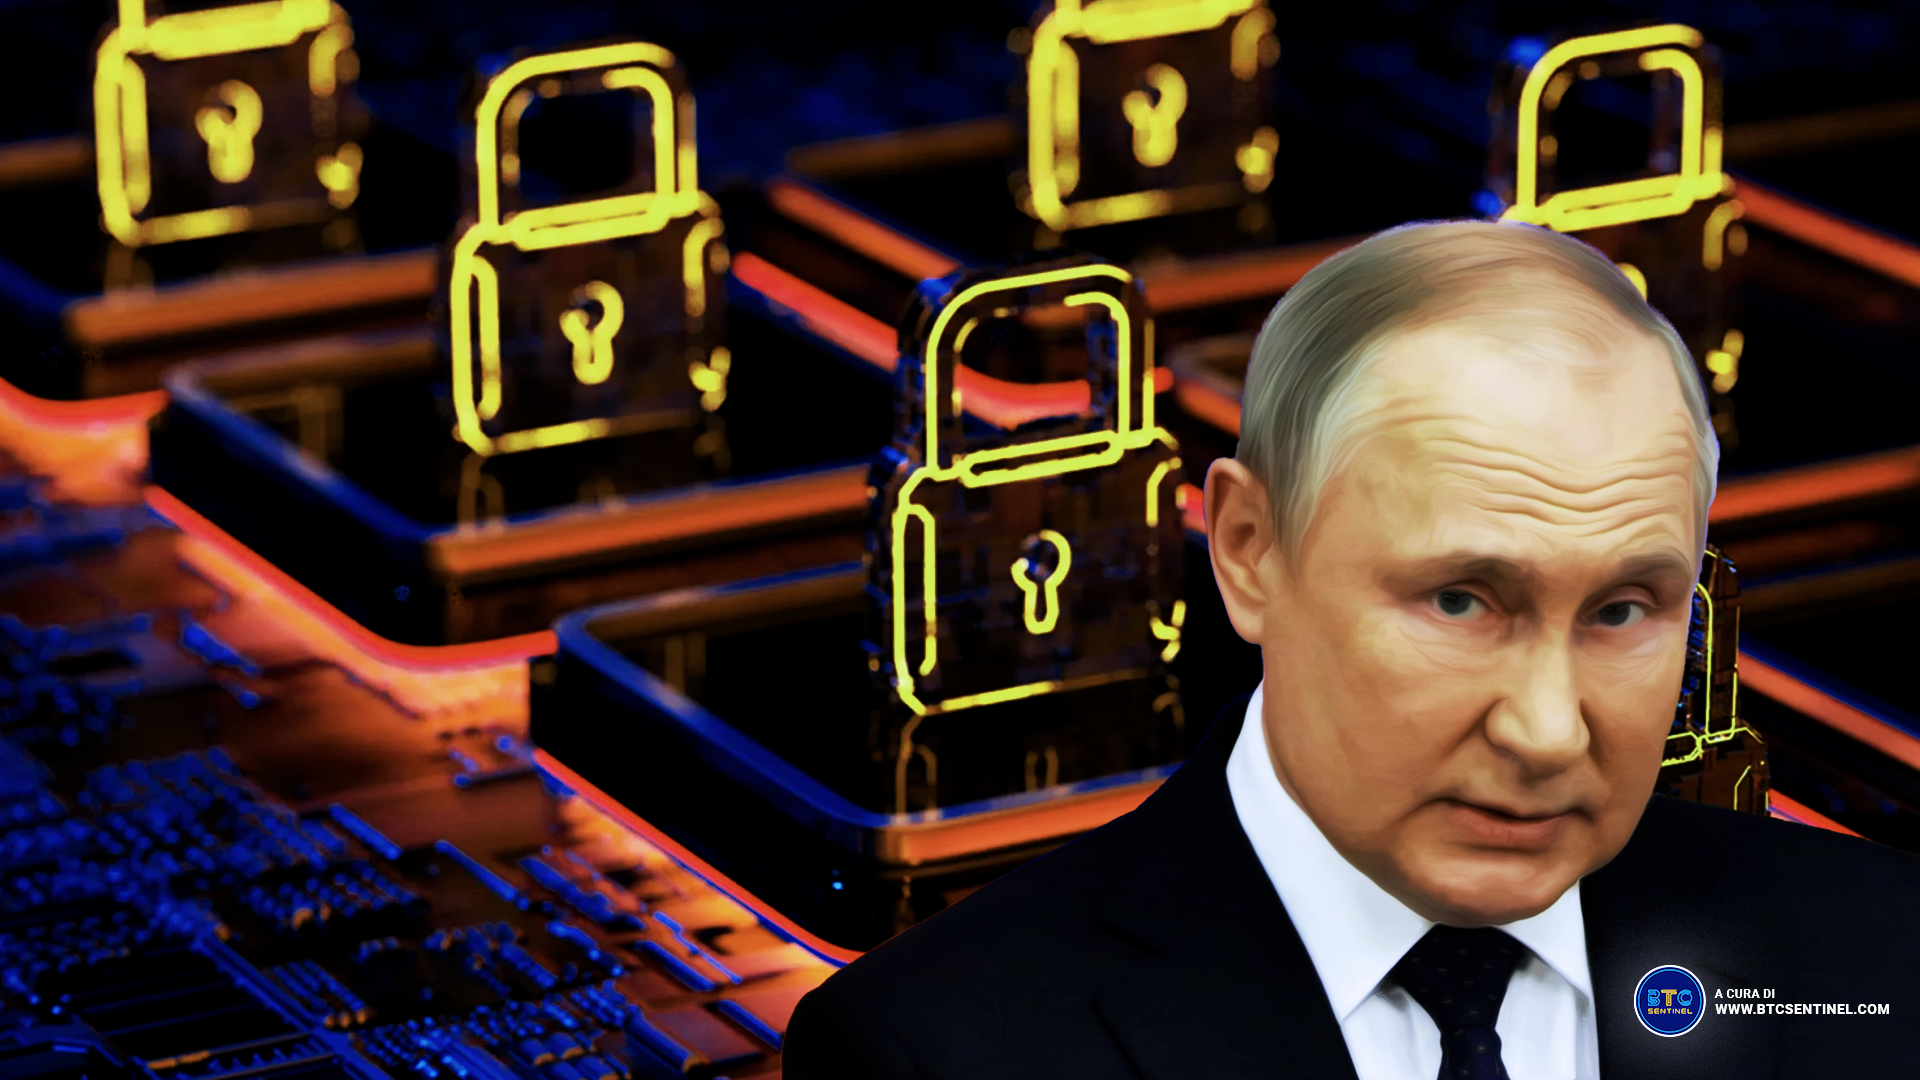 Il presidente russo Vladimir Putin chiede un sistema di pagamento basato su blockchain indipendente dalle banche